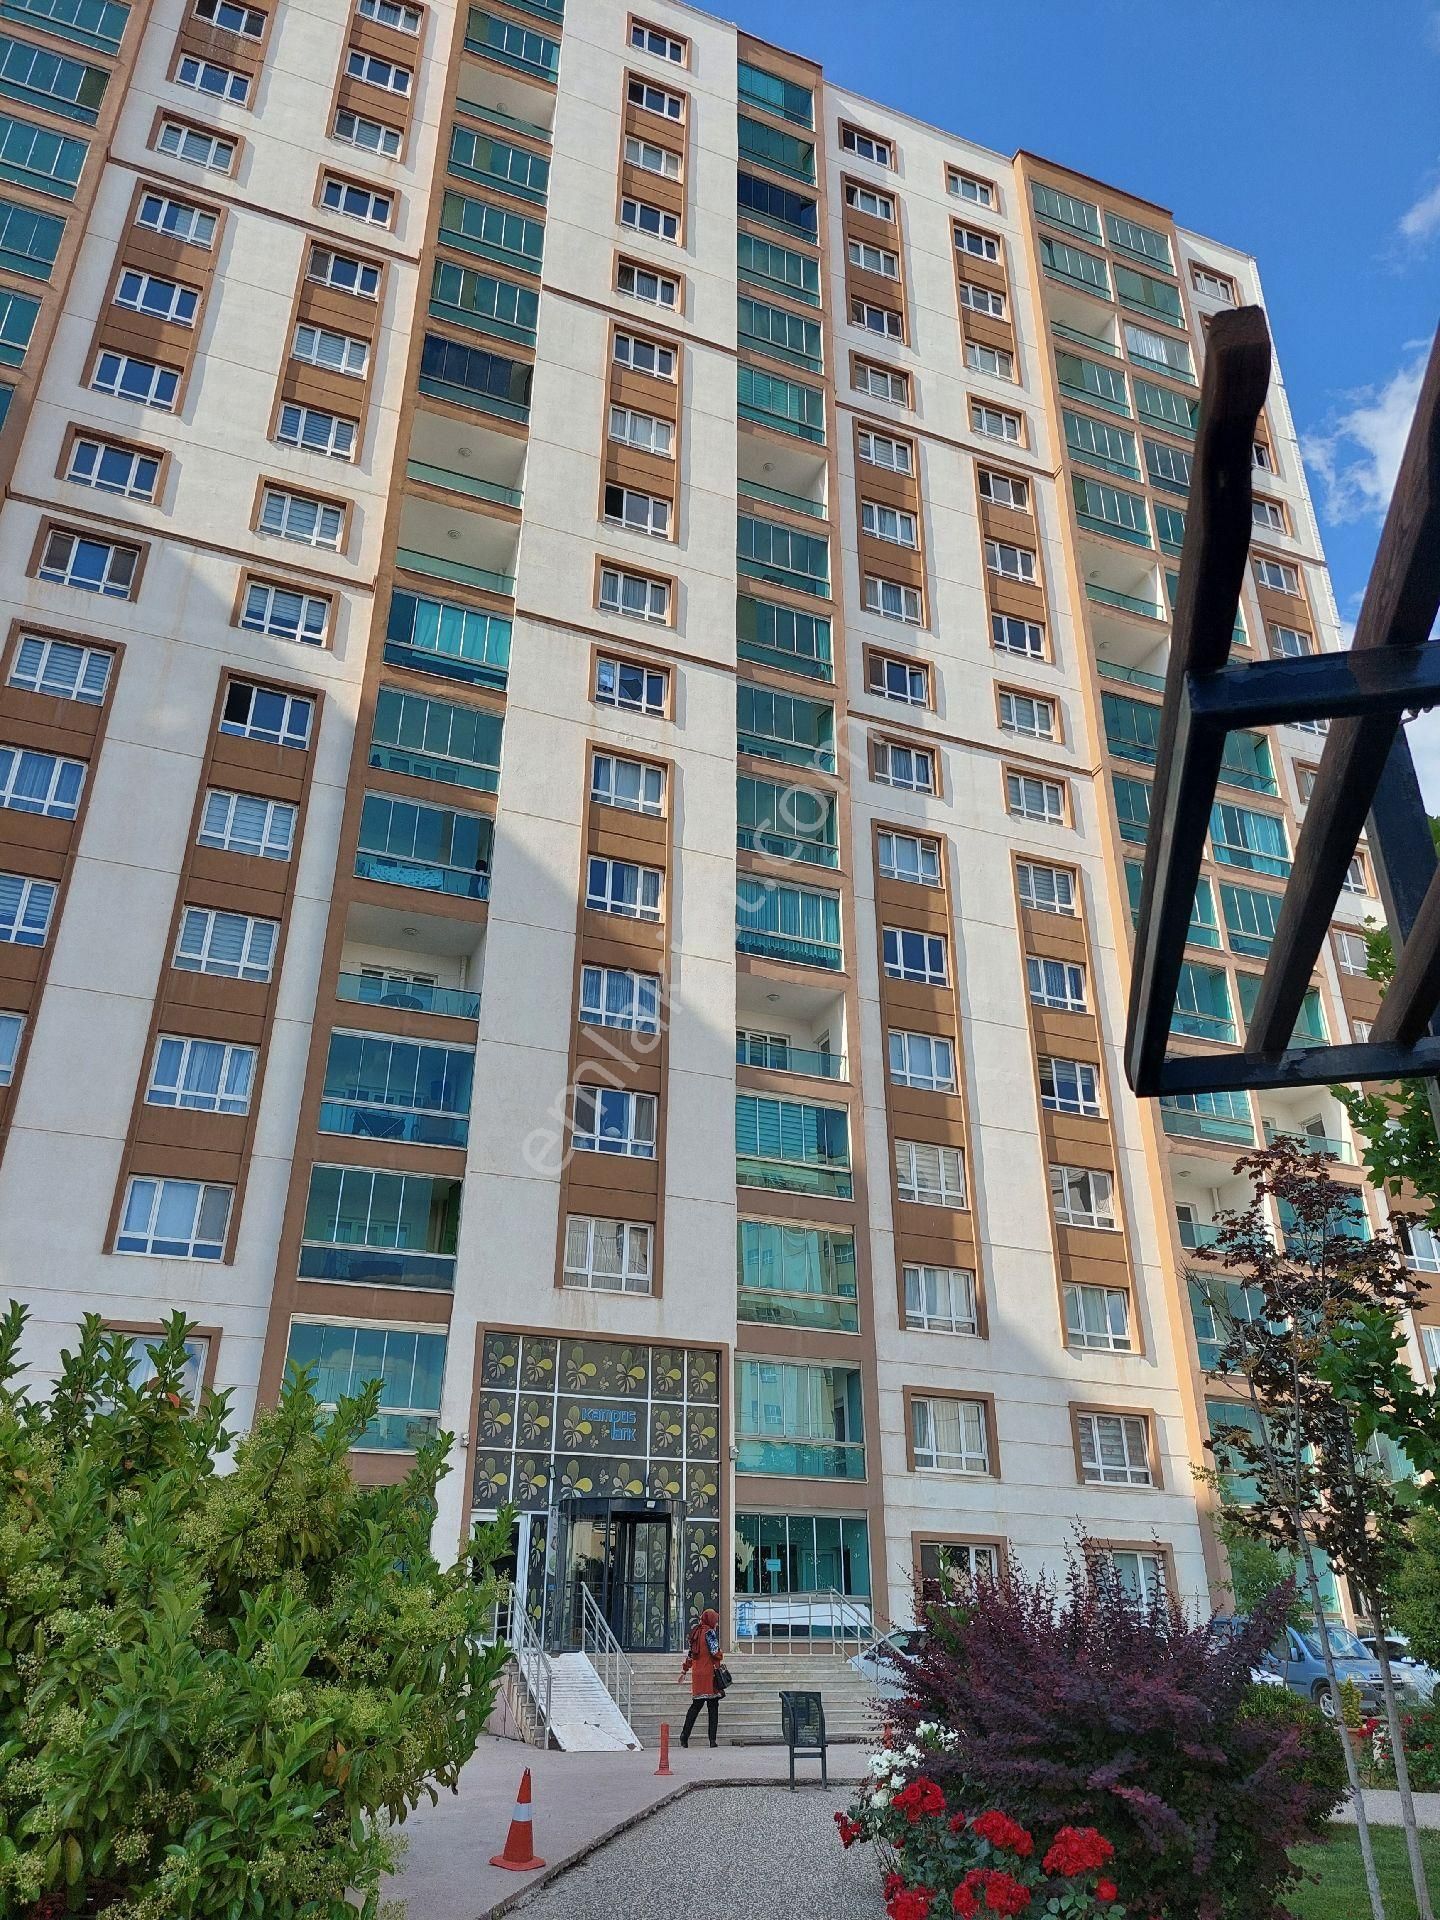 Yahşihan Yenişehir Kiralık Daire kampüs Park kiralık daire